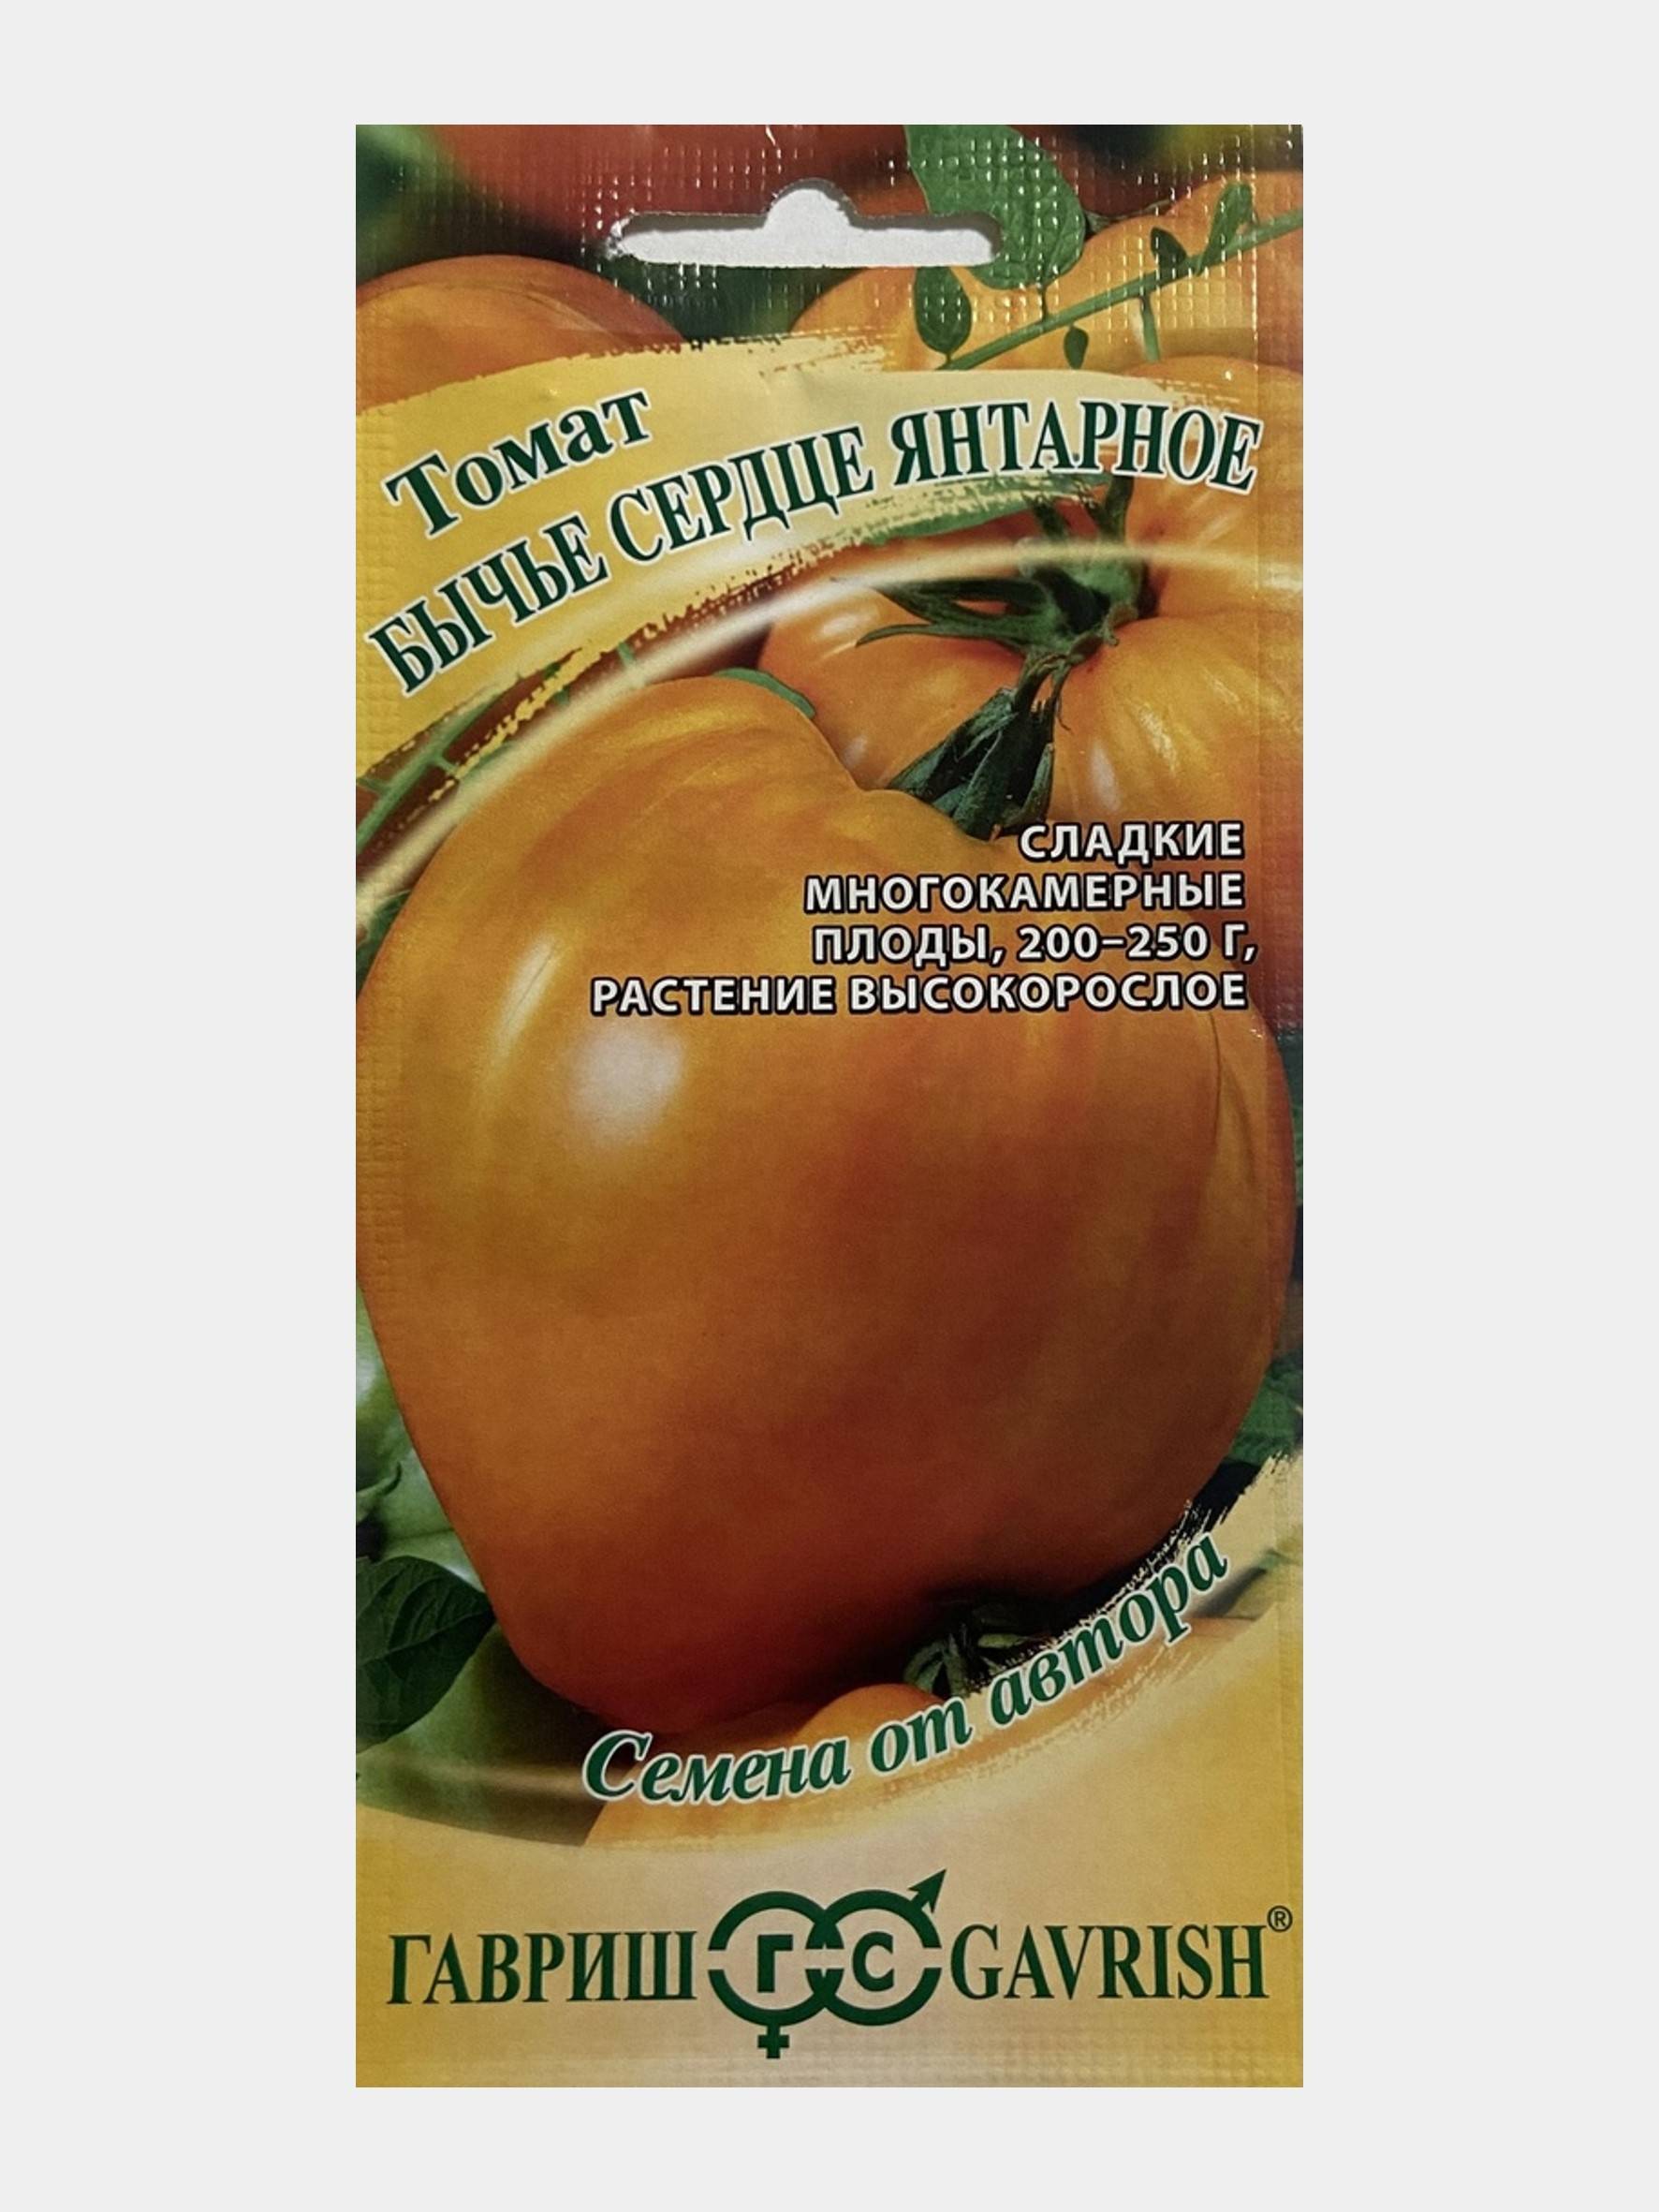 Томат сердце ашхабада: описание и характеристика сорта, фото помидоров и отзывы об урожайности